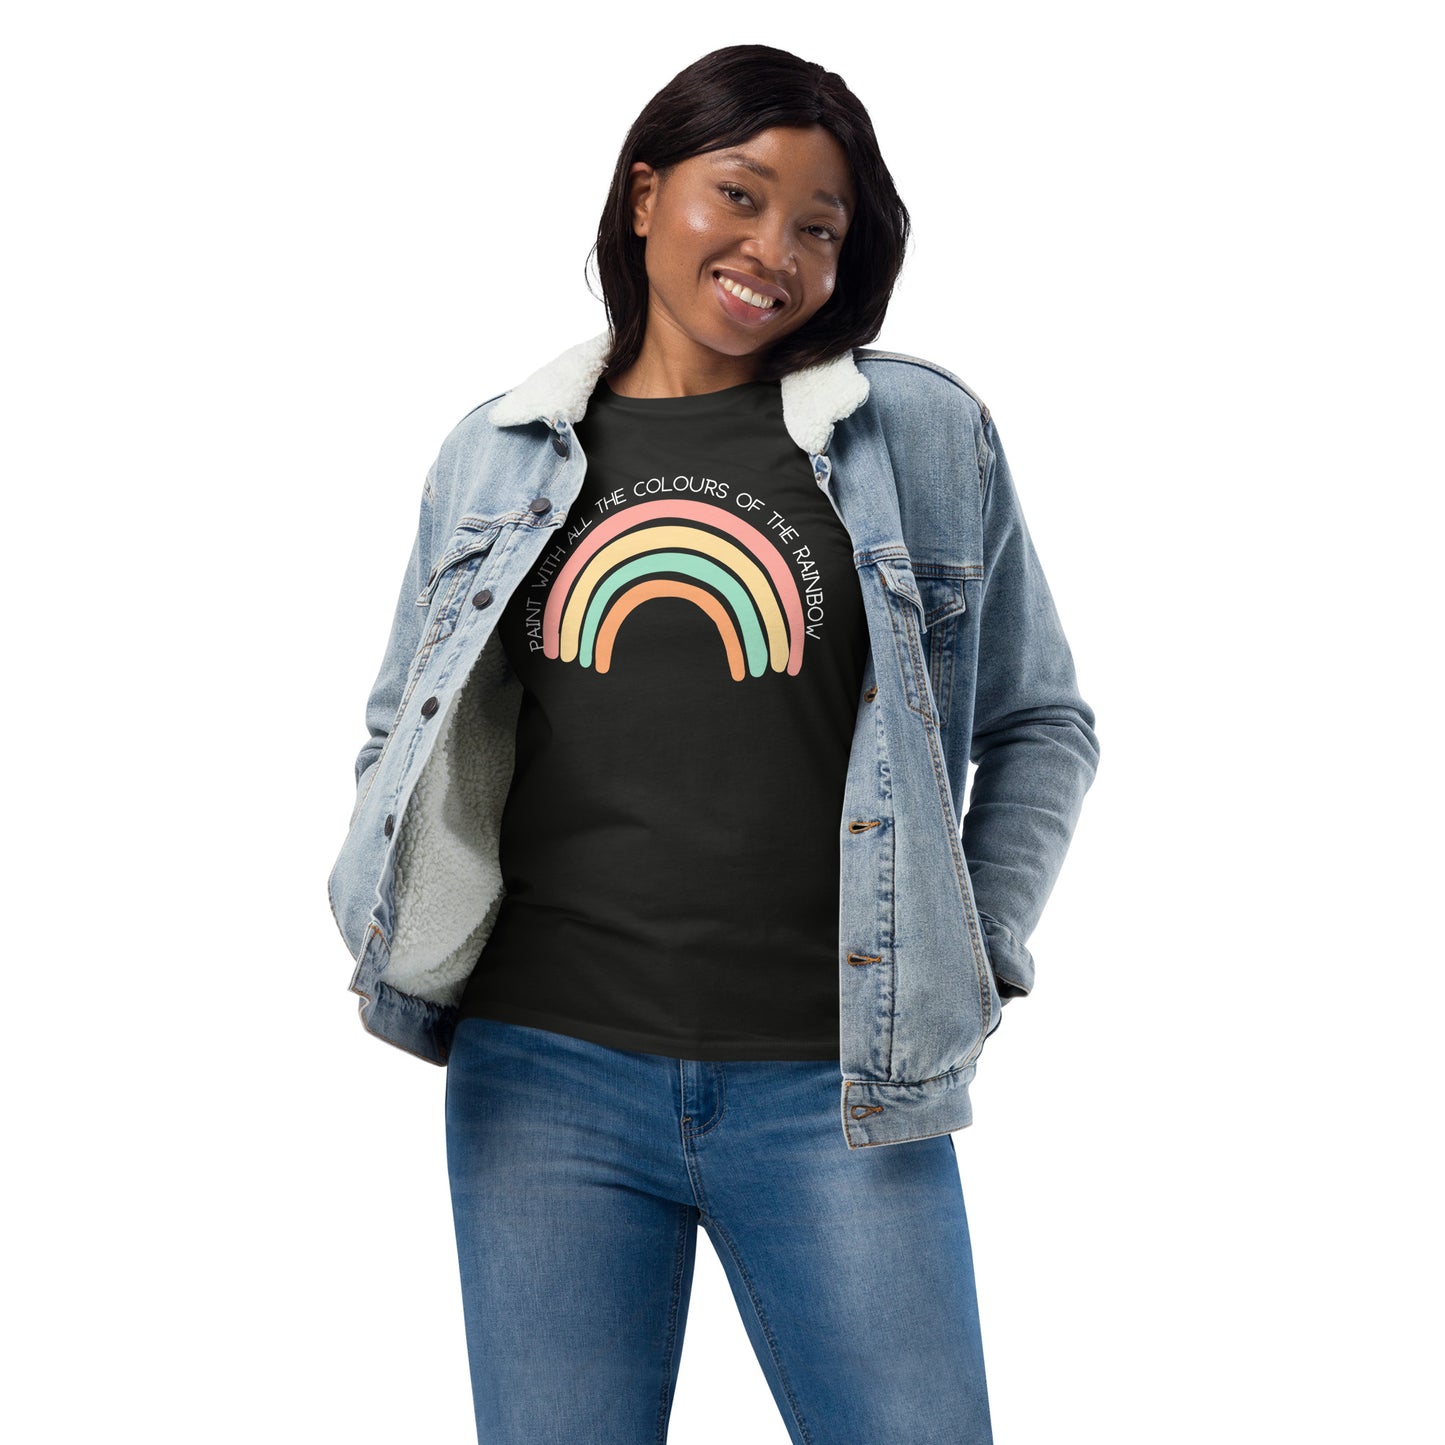 Rainbow Unisex fashion long sleeve shirt